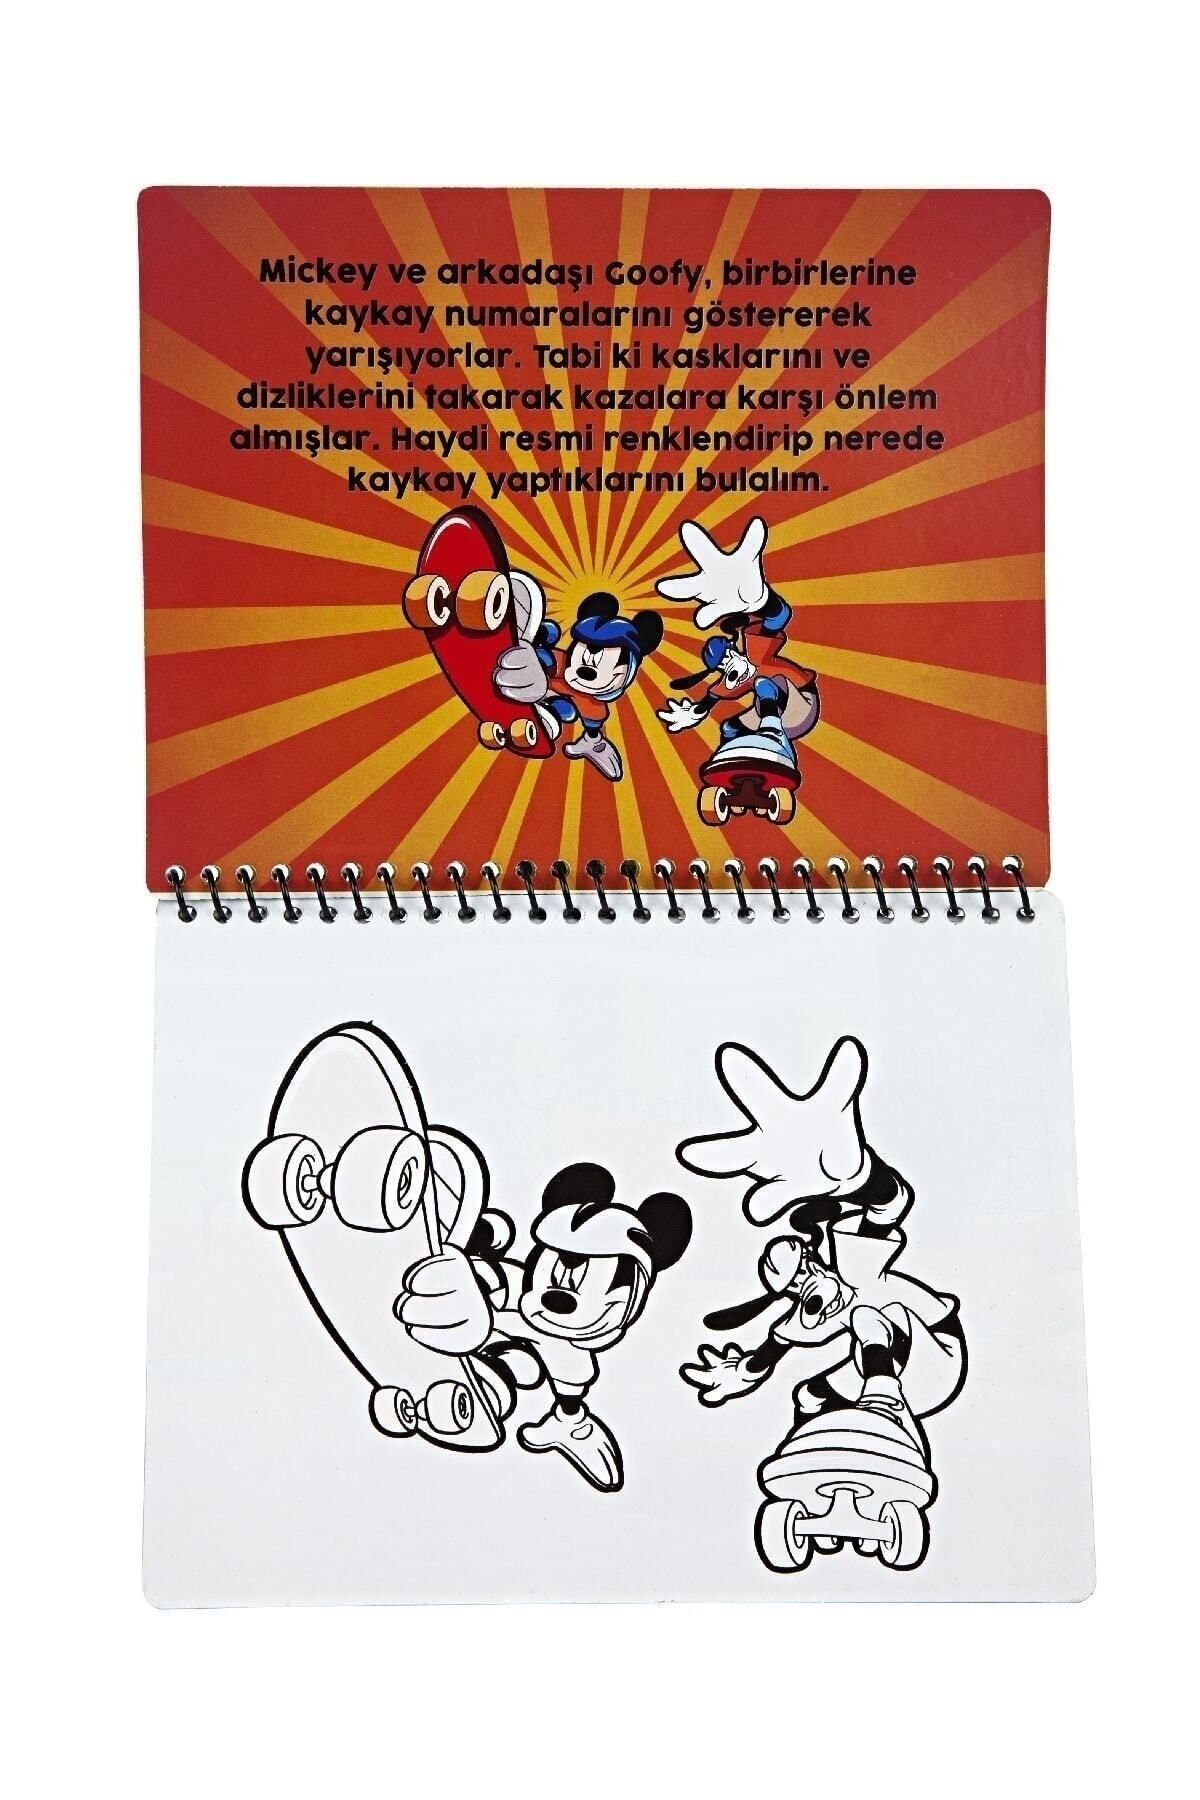 Disney Mickey Mouse Lisanslı Sihirli Boyama Kitabı Özel Sulu Kalem Ile Water Painting